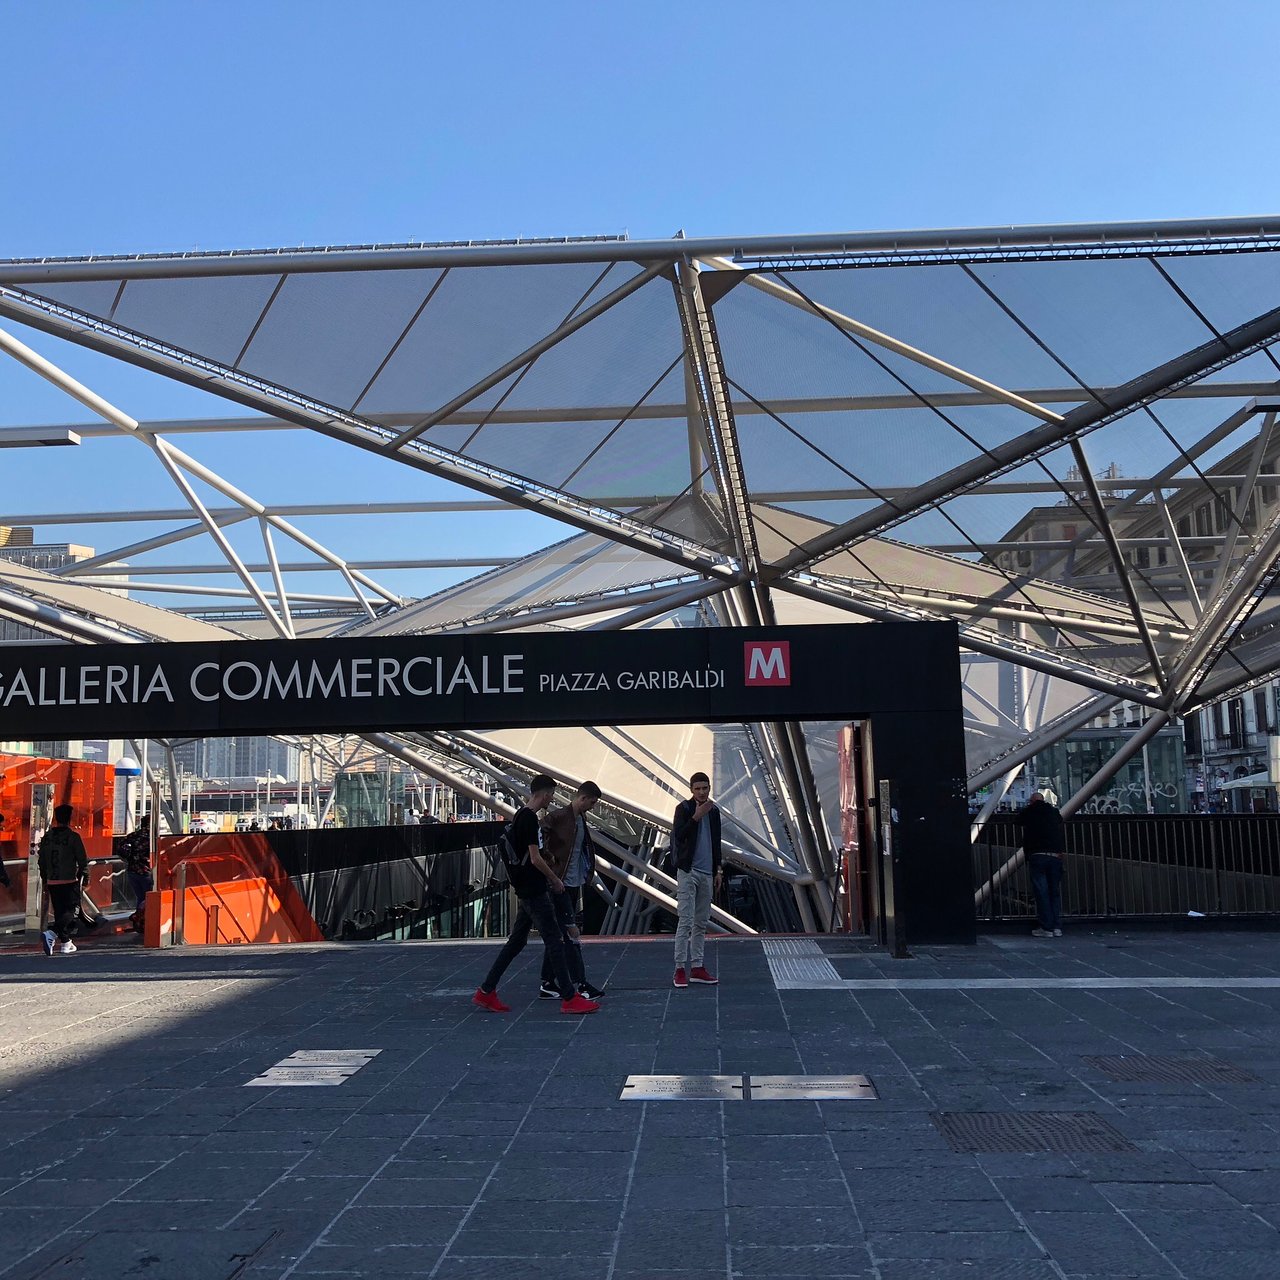 Galleria Commerciale Plaza